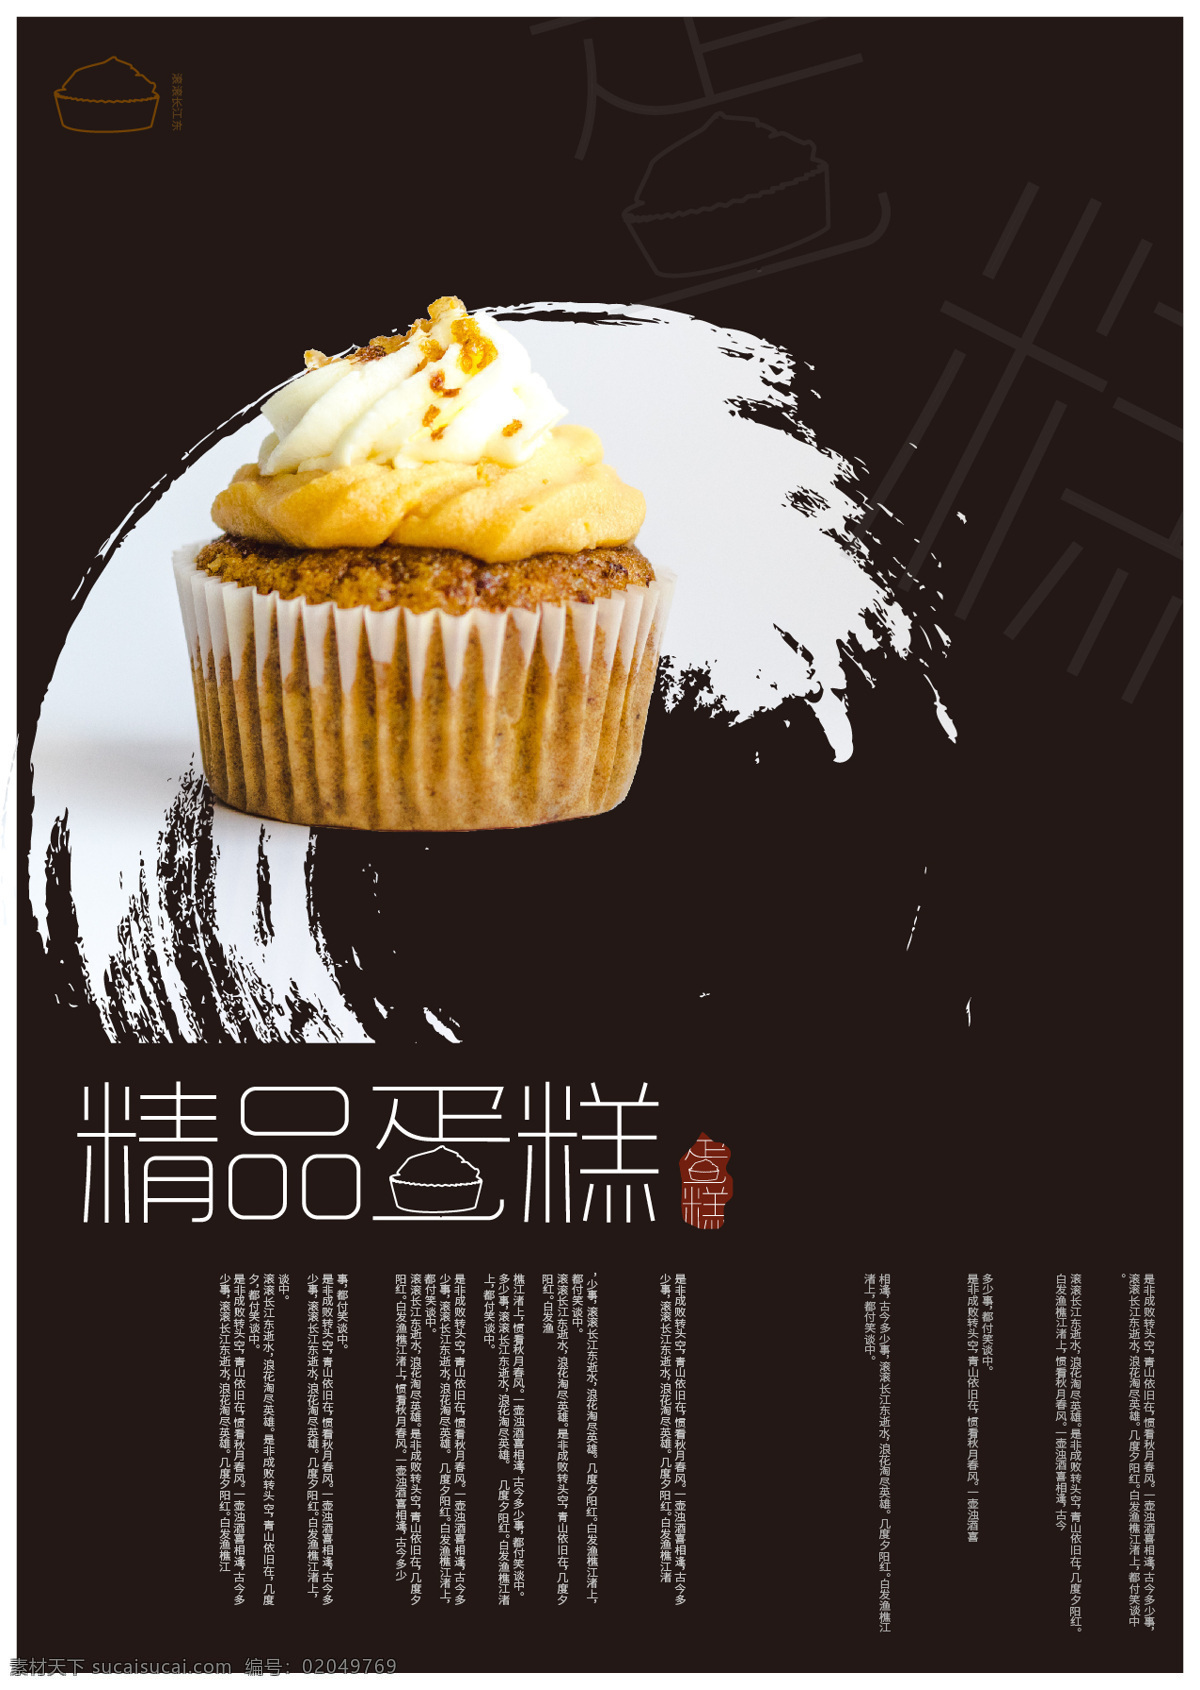 食品海报 蛋糕 精品 食品 剪切蒙版海报 排版 文字设计 笔刷 美味 黄色 小吃 零食